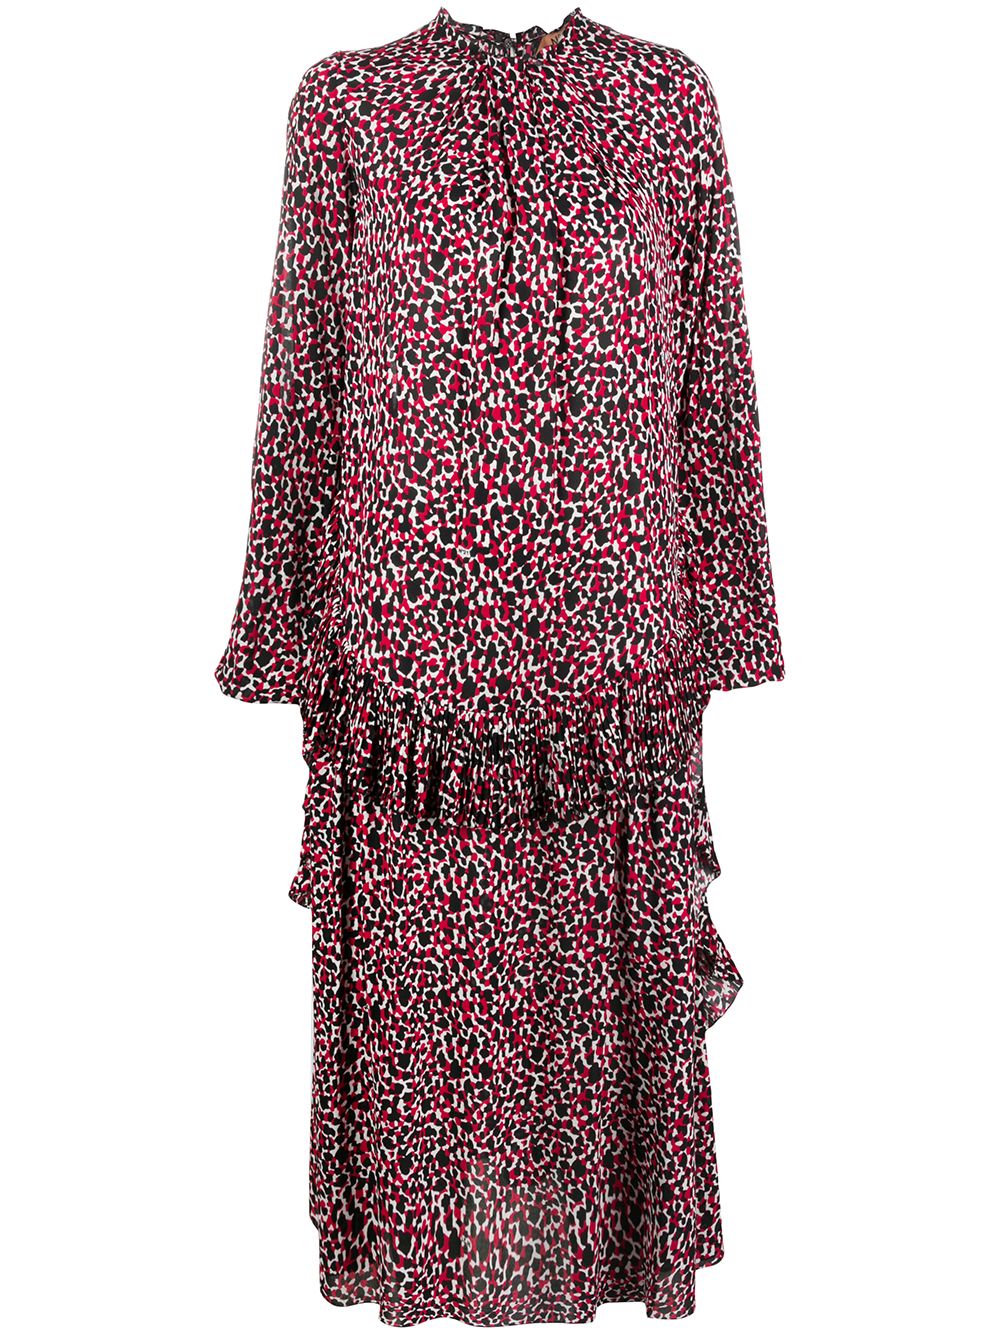 Nº21 leopard print frilled midi dress - Red von Nº21